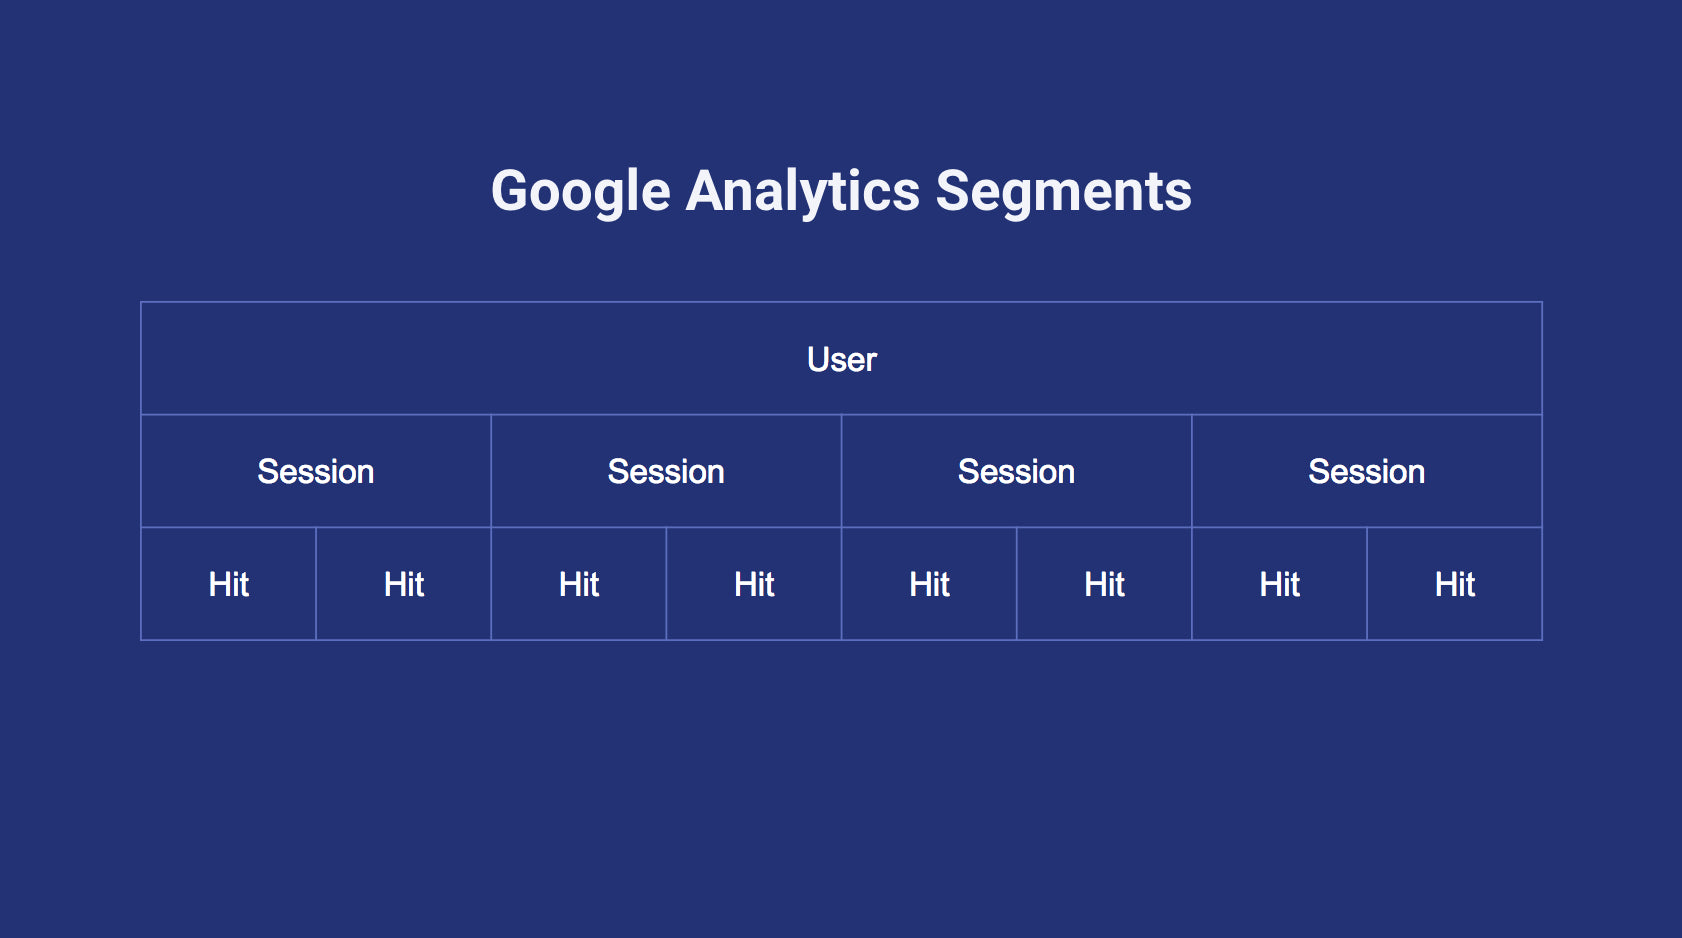 Google Analytics segmentation levels